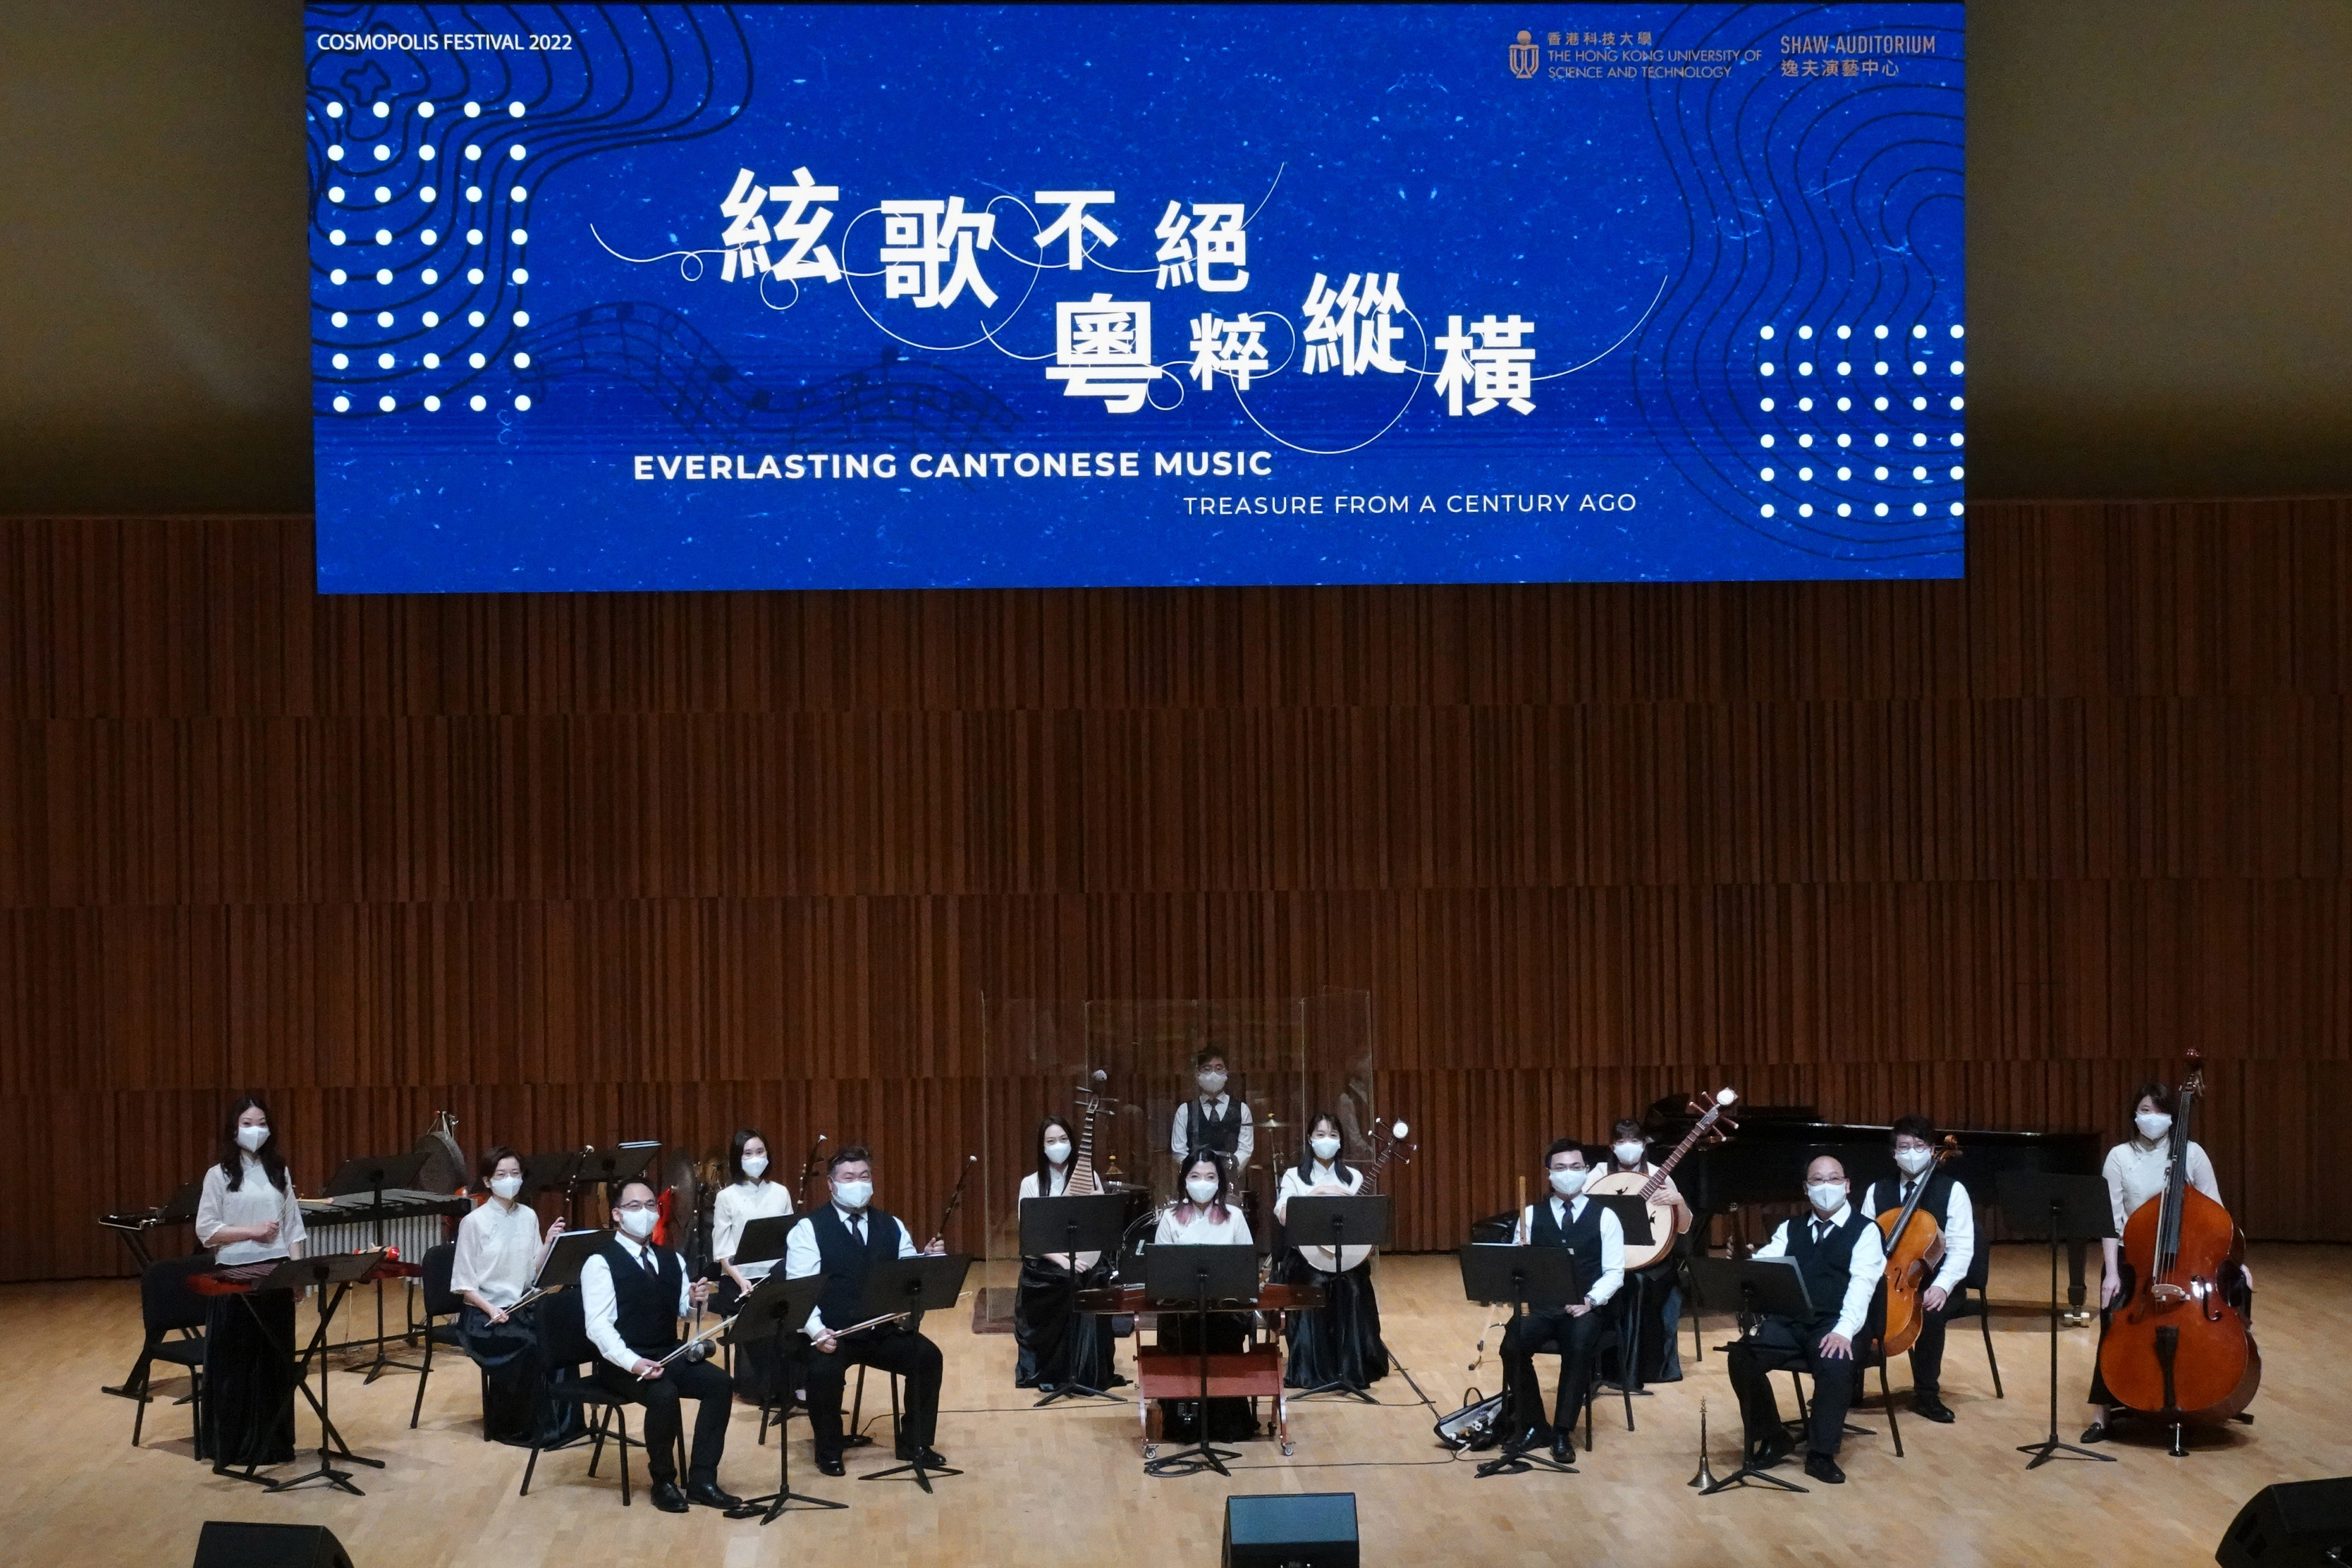 絃歌不絕—粵粹縱橫 Everlasting Cantonese Music: Treasure from A Century Ago 